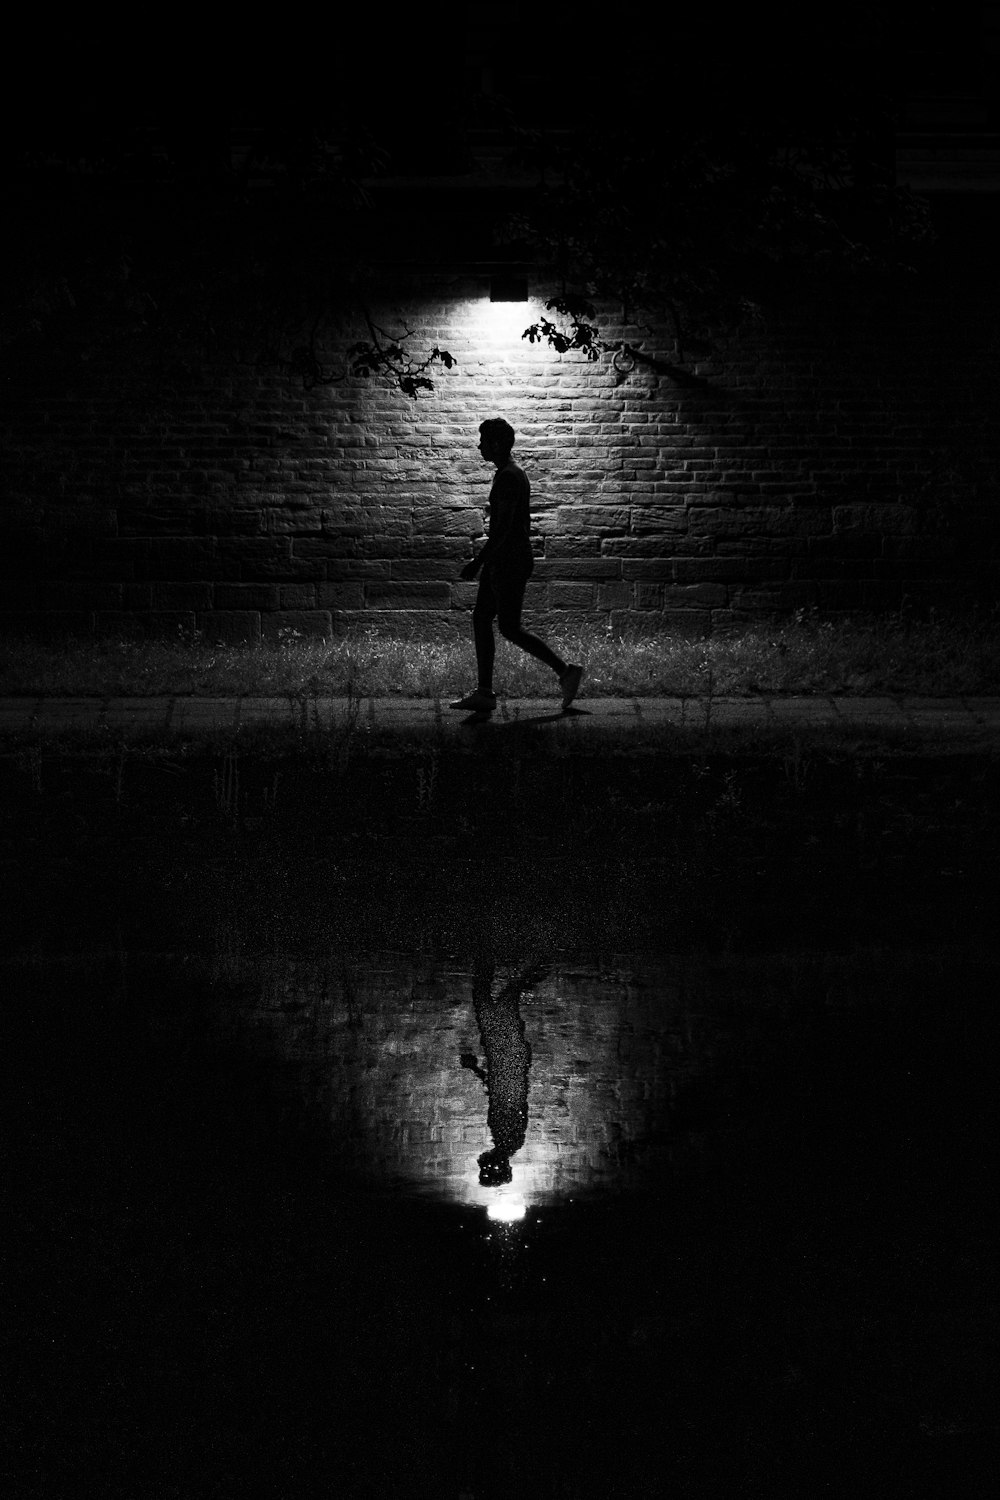 silhouette of man walking on street